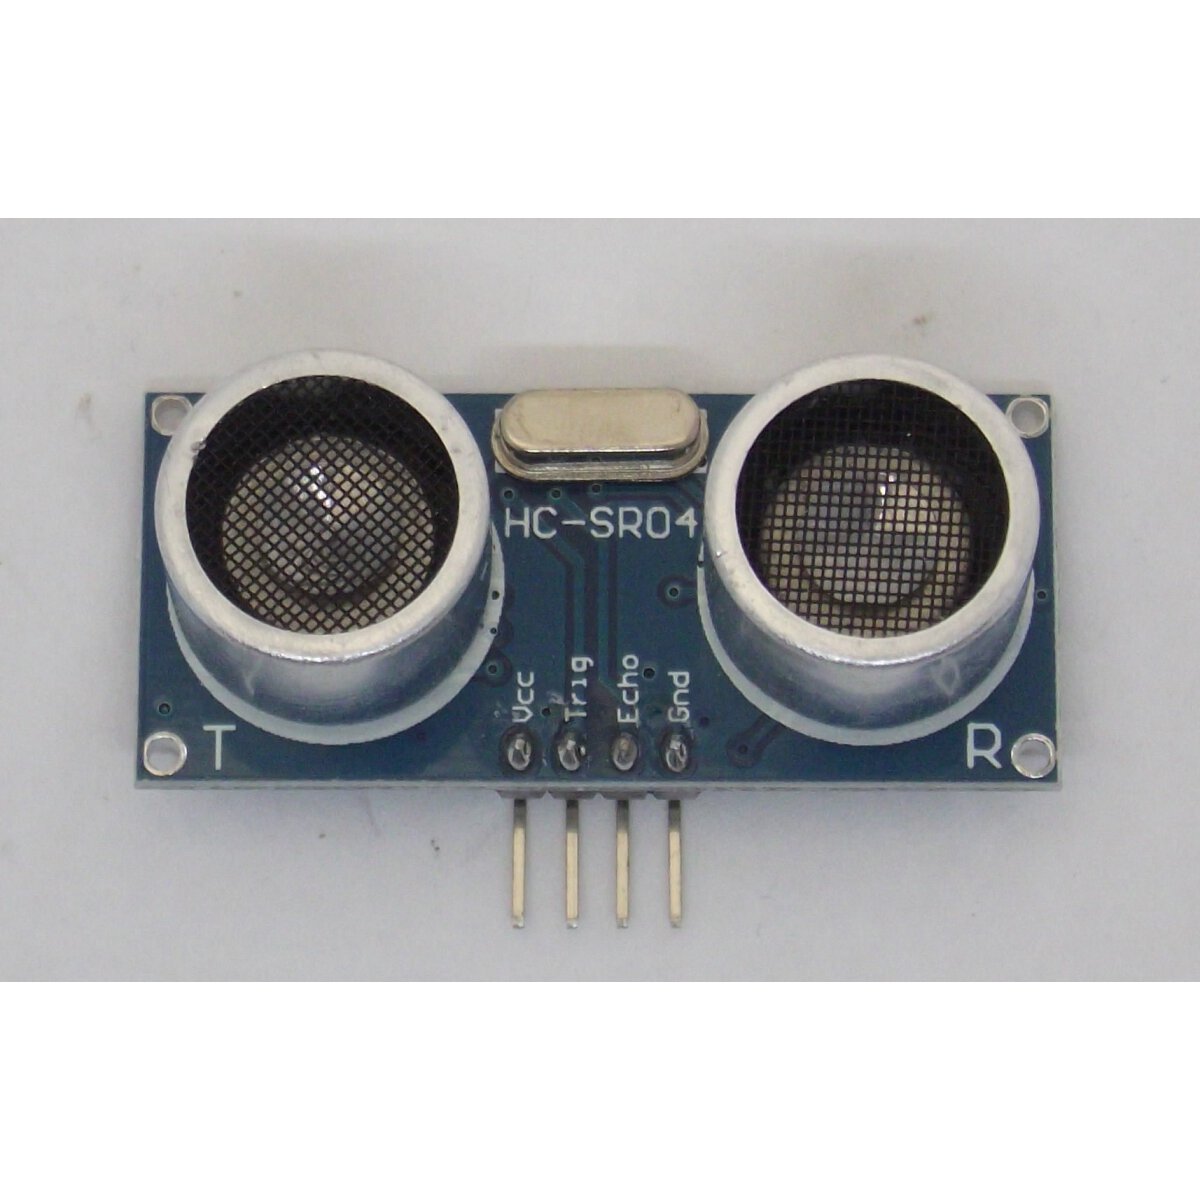 Ultraschallsensor passend zu Arduino oder ähnlichen, 3,49 €